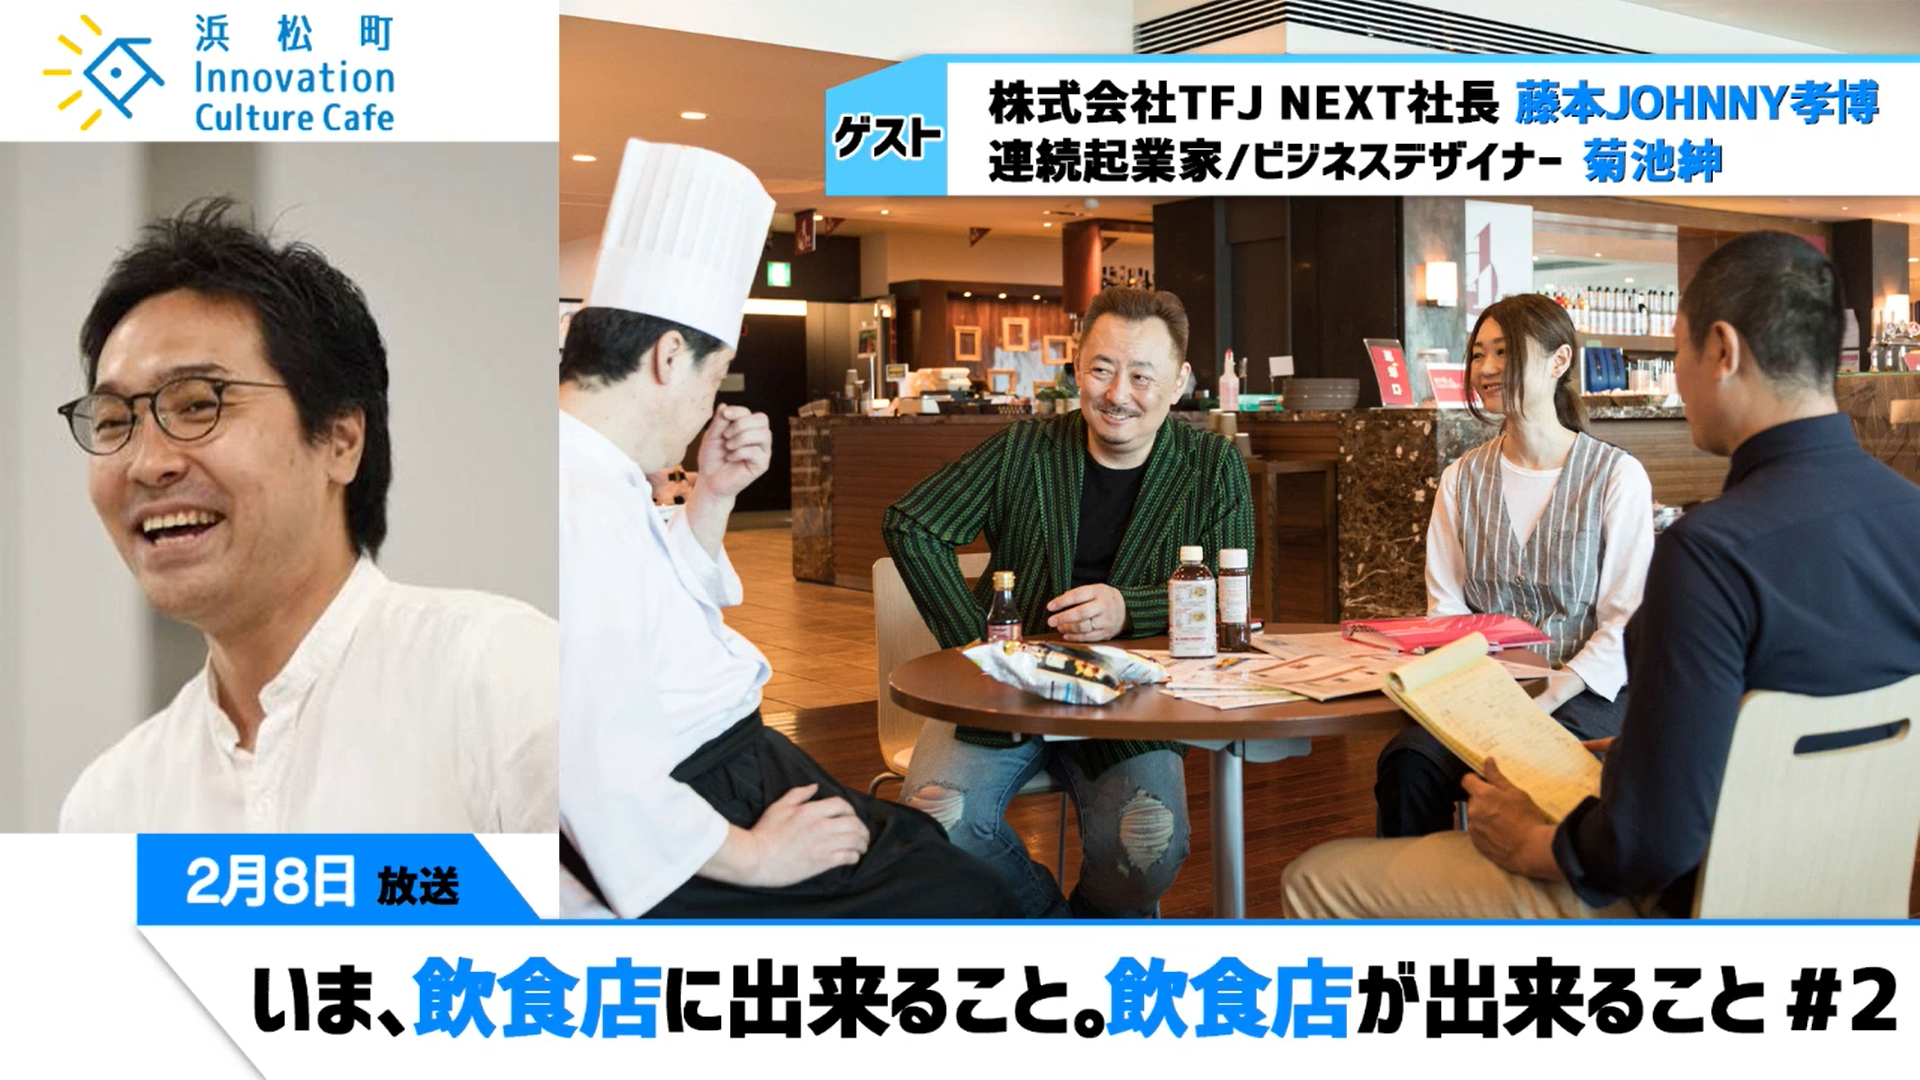 いま、飲食店に出来ること。飲食店が出来ること。『浜松町Innovation Culture Cafe』